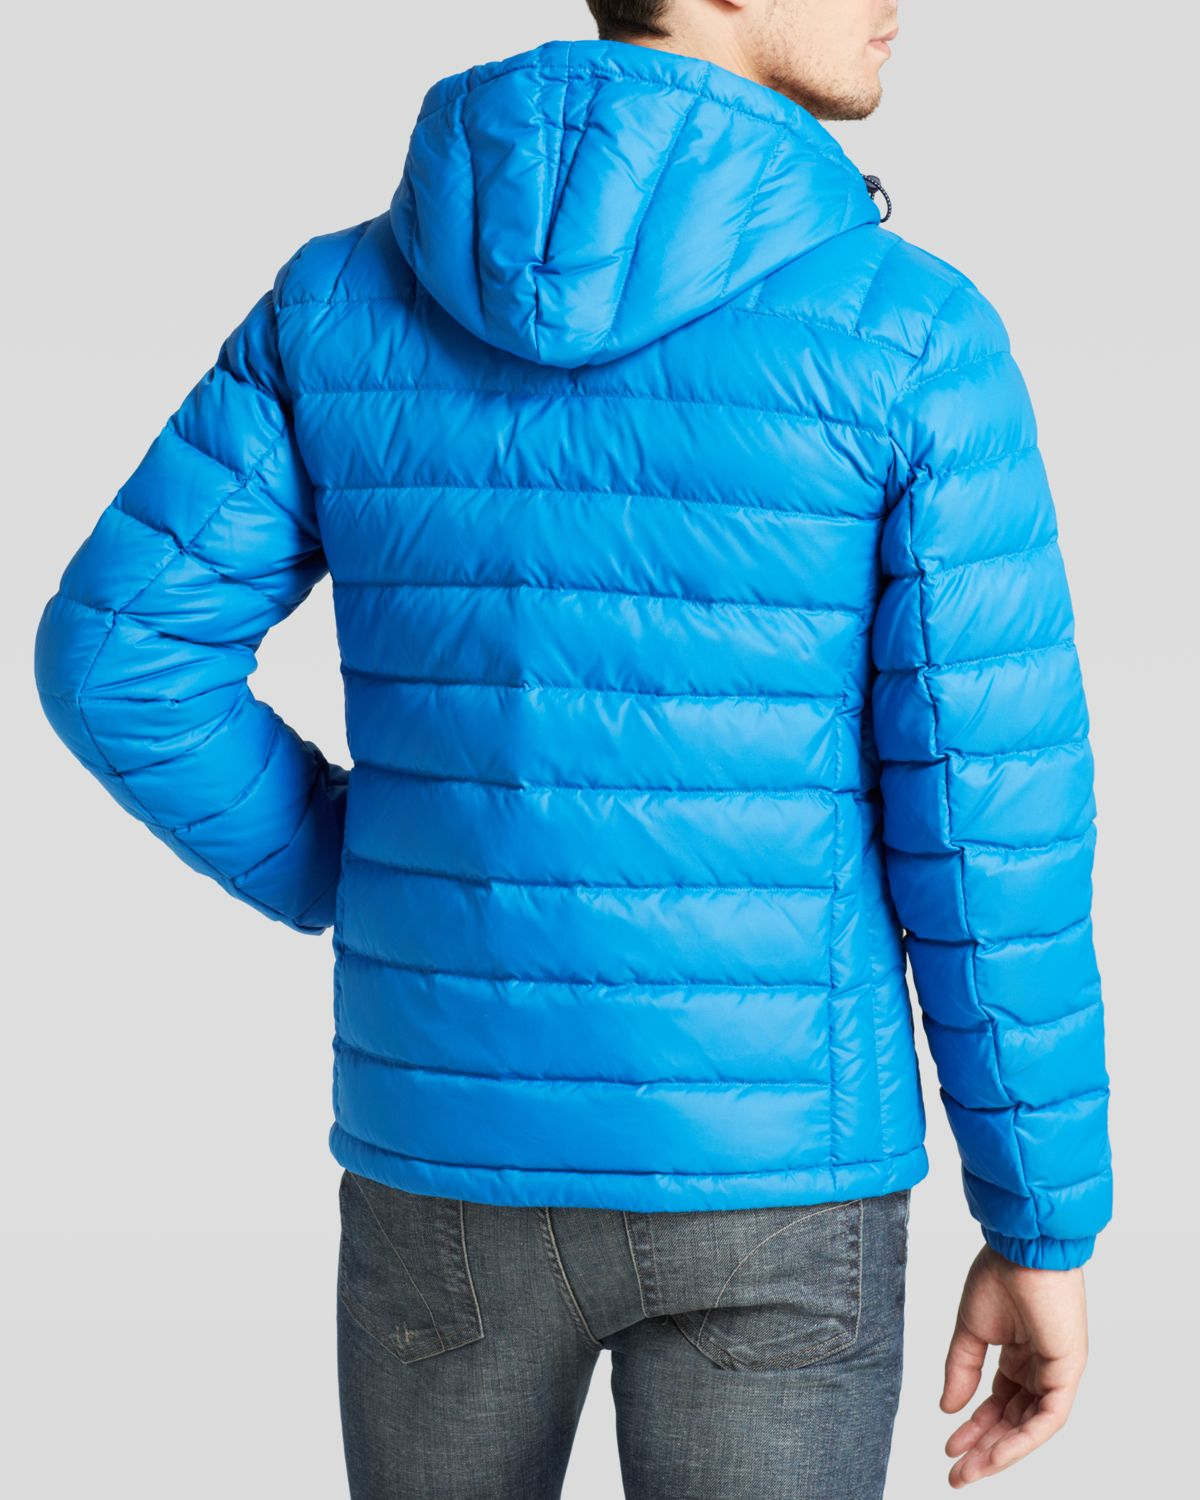 Lyst - Lacoste Hooded Barrel Jacket in Blue for Men